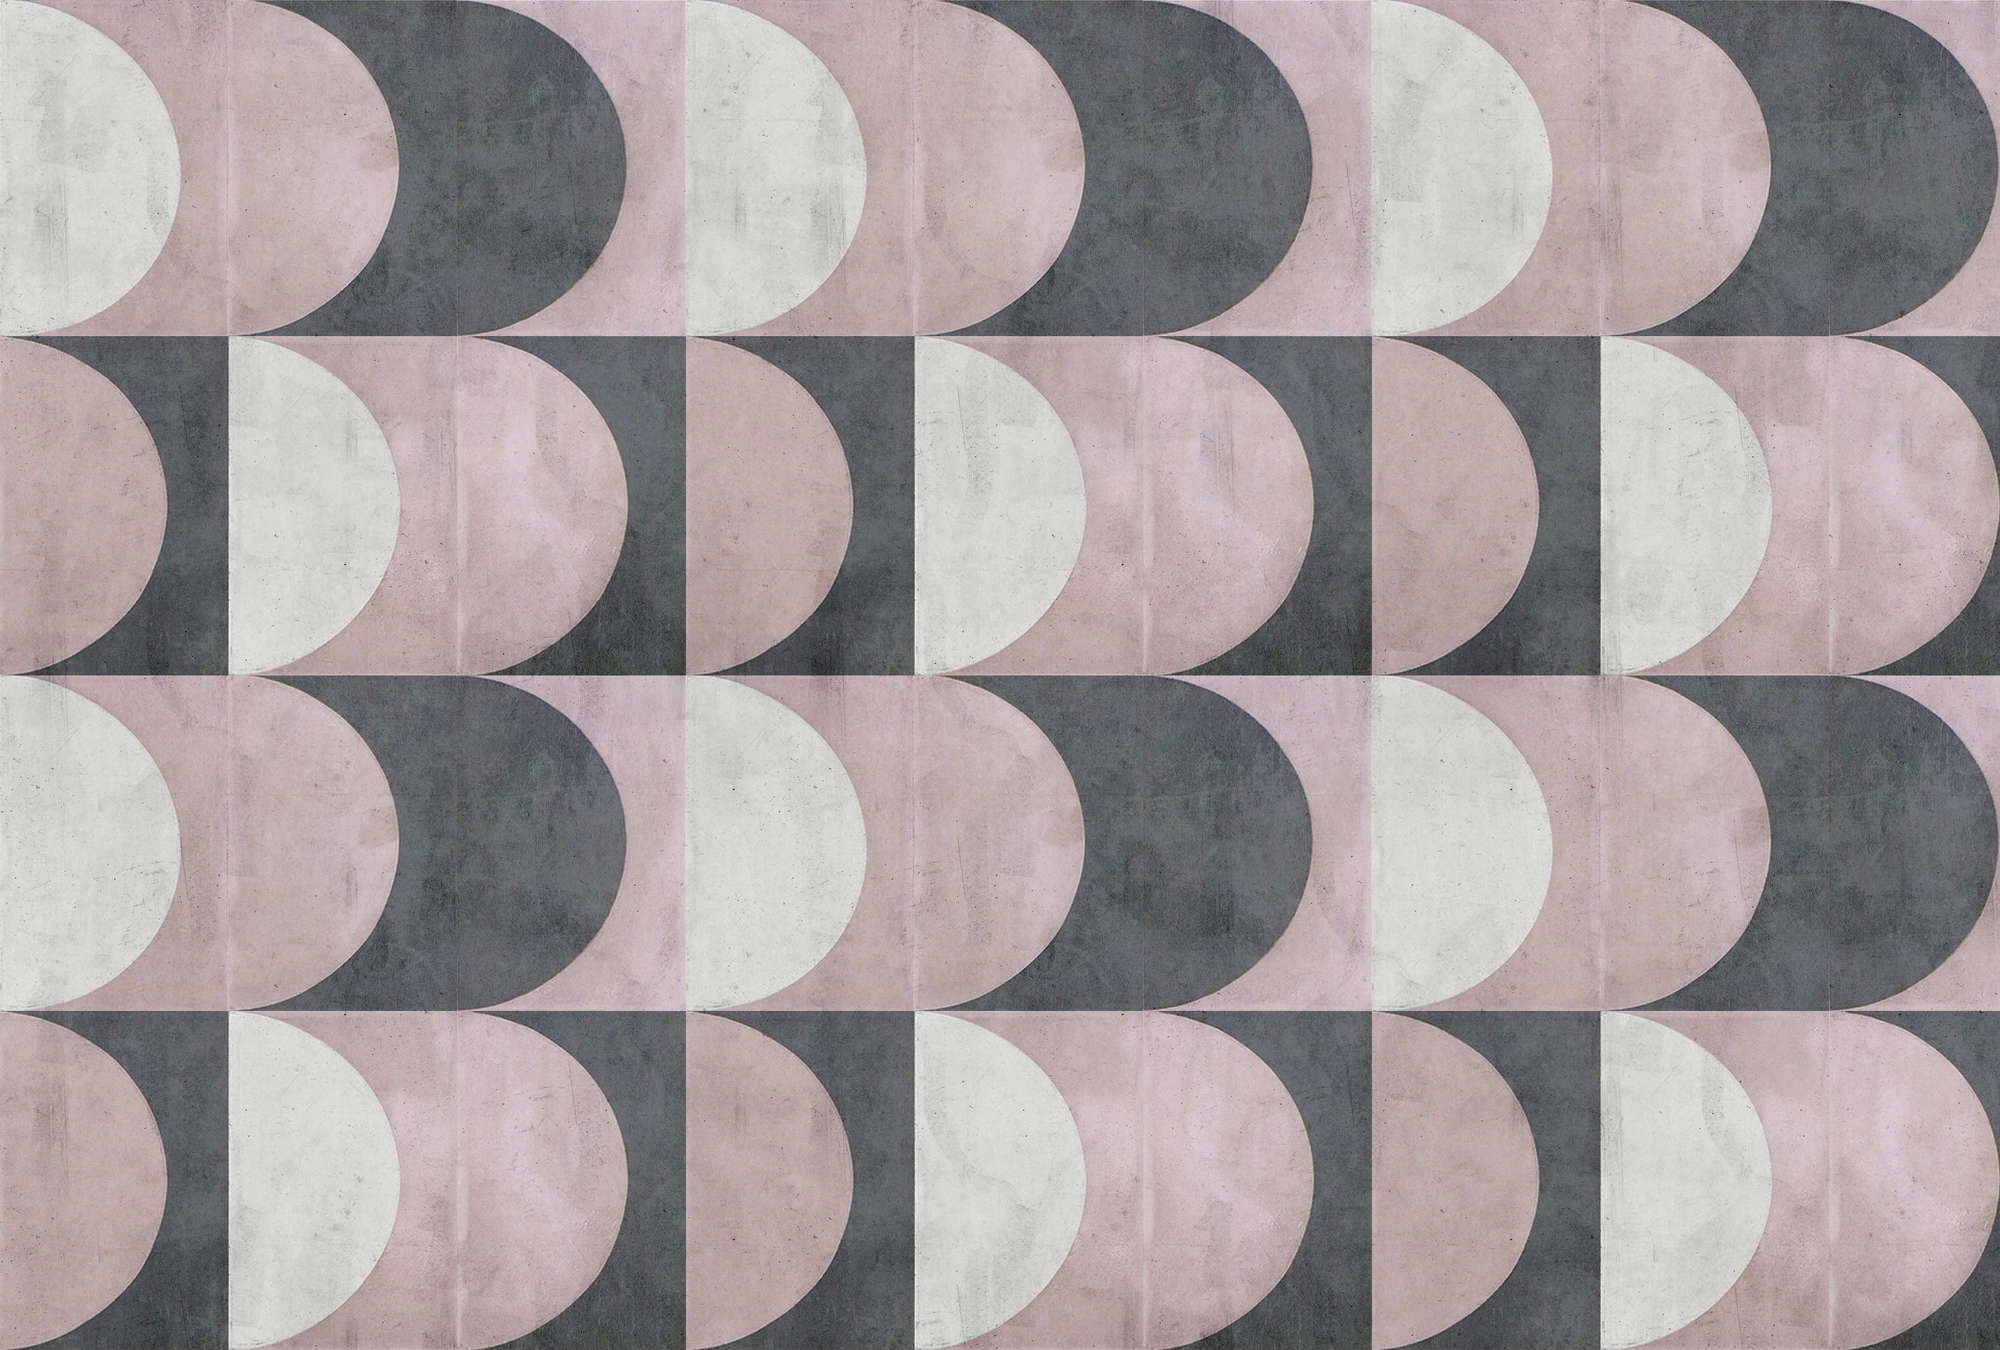             papier peint en papier panoramique »julek 1« - motif rétro imitation béton - gris, lilas | intissé légèrement structuré
        